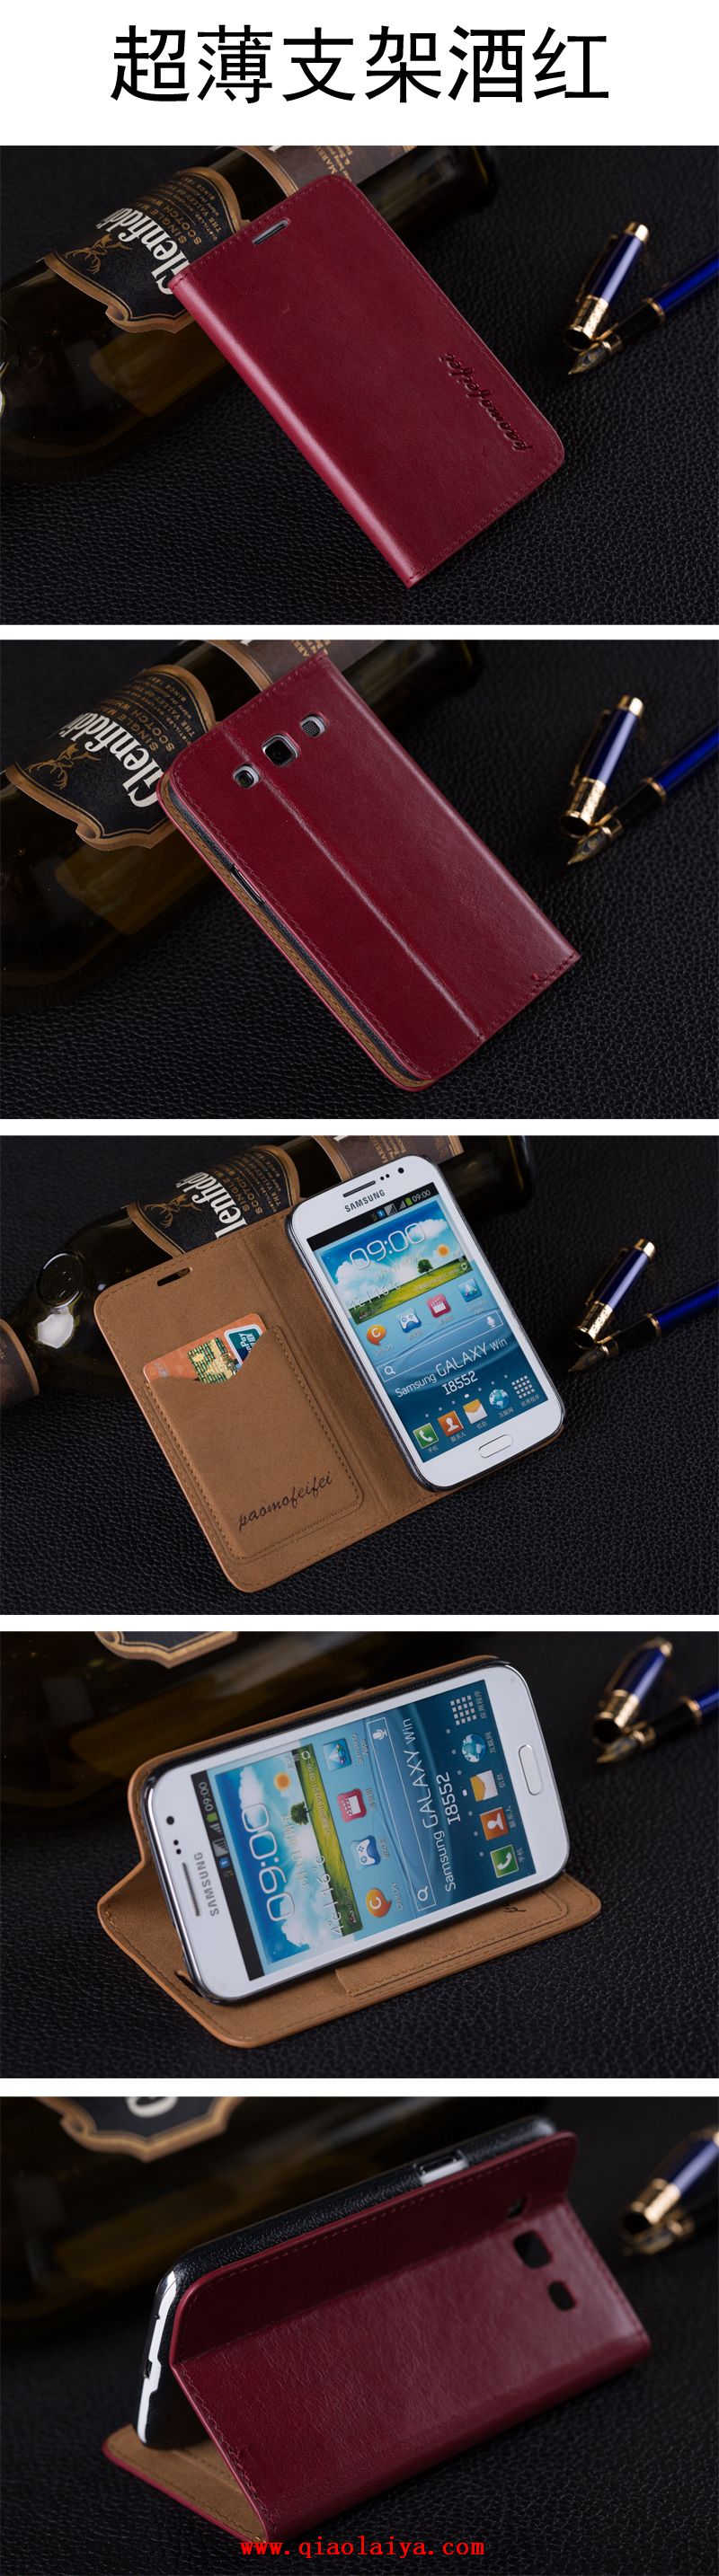 Samsung i8558 téléphone portable étui Galaxy Win téléphone portable coque de protection